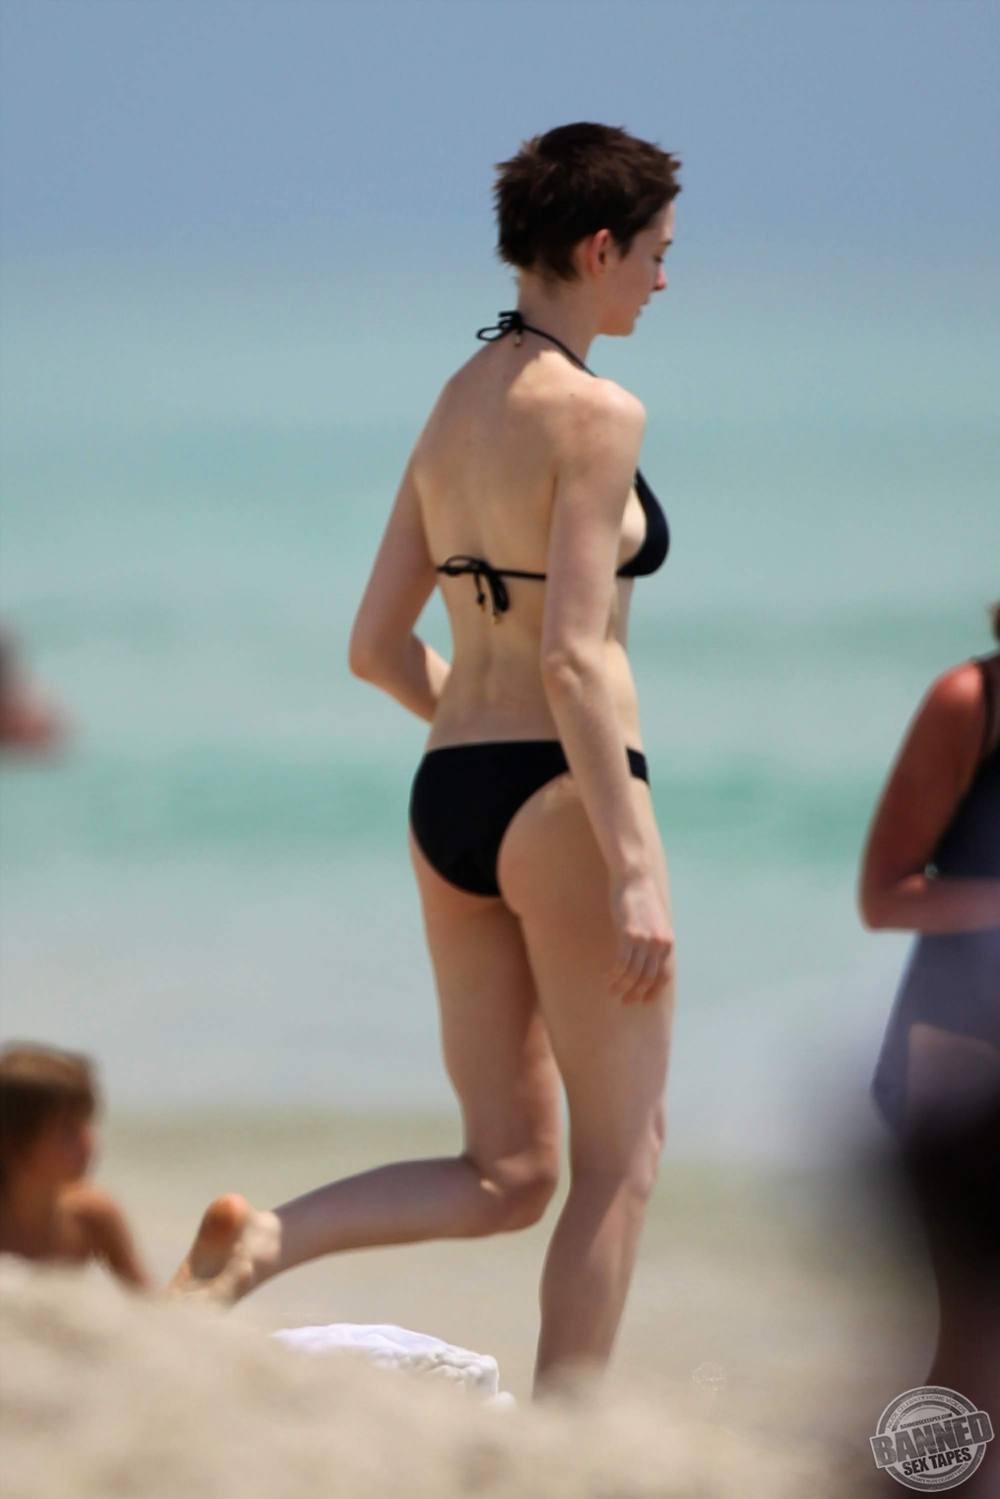 Celebrity Anne Hathaway Caught Sunbathing In Bikini On A Bea...